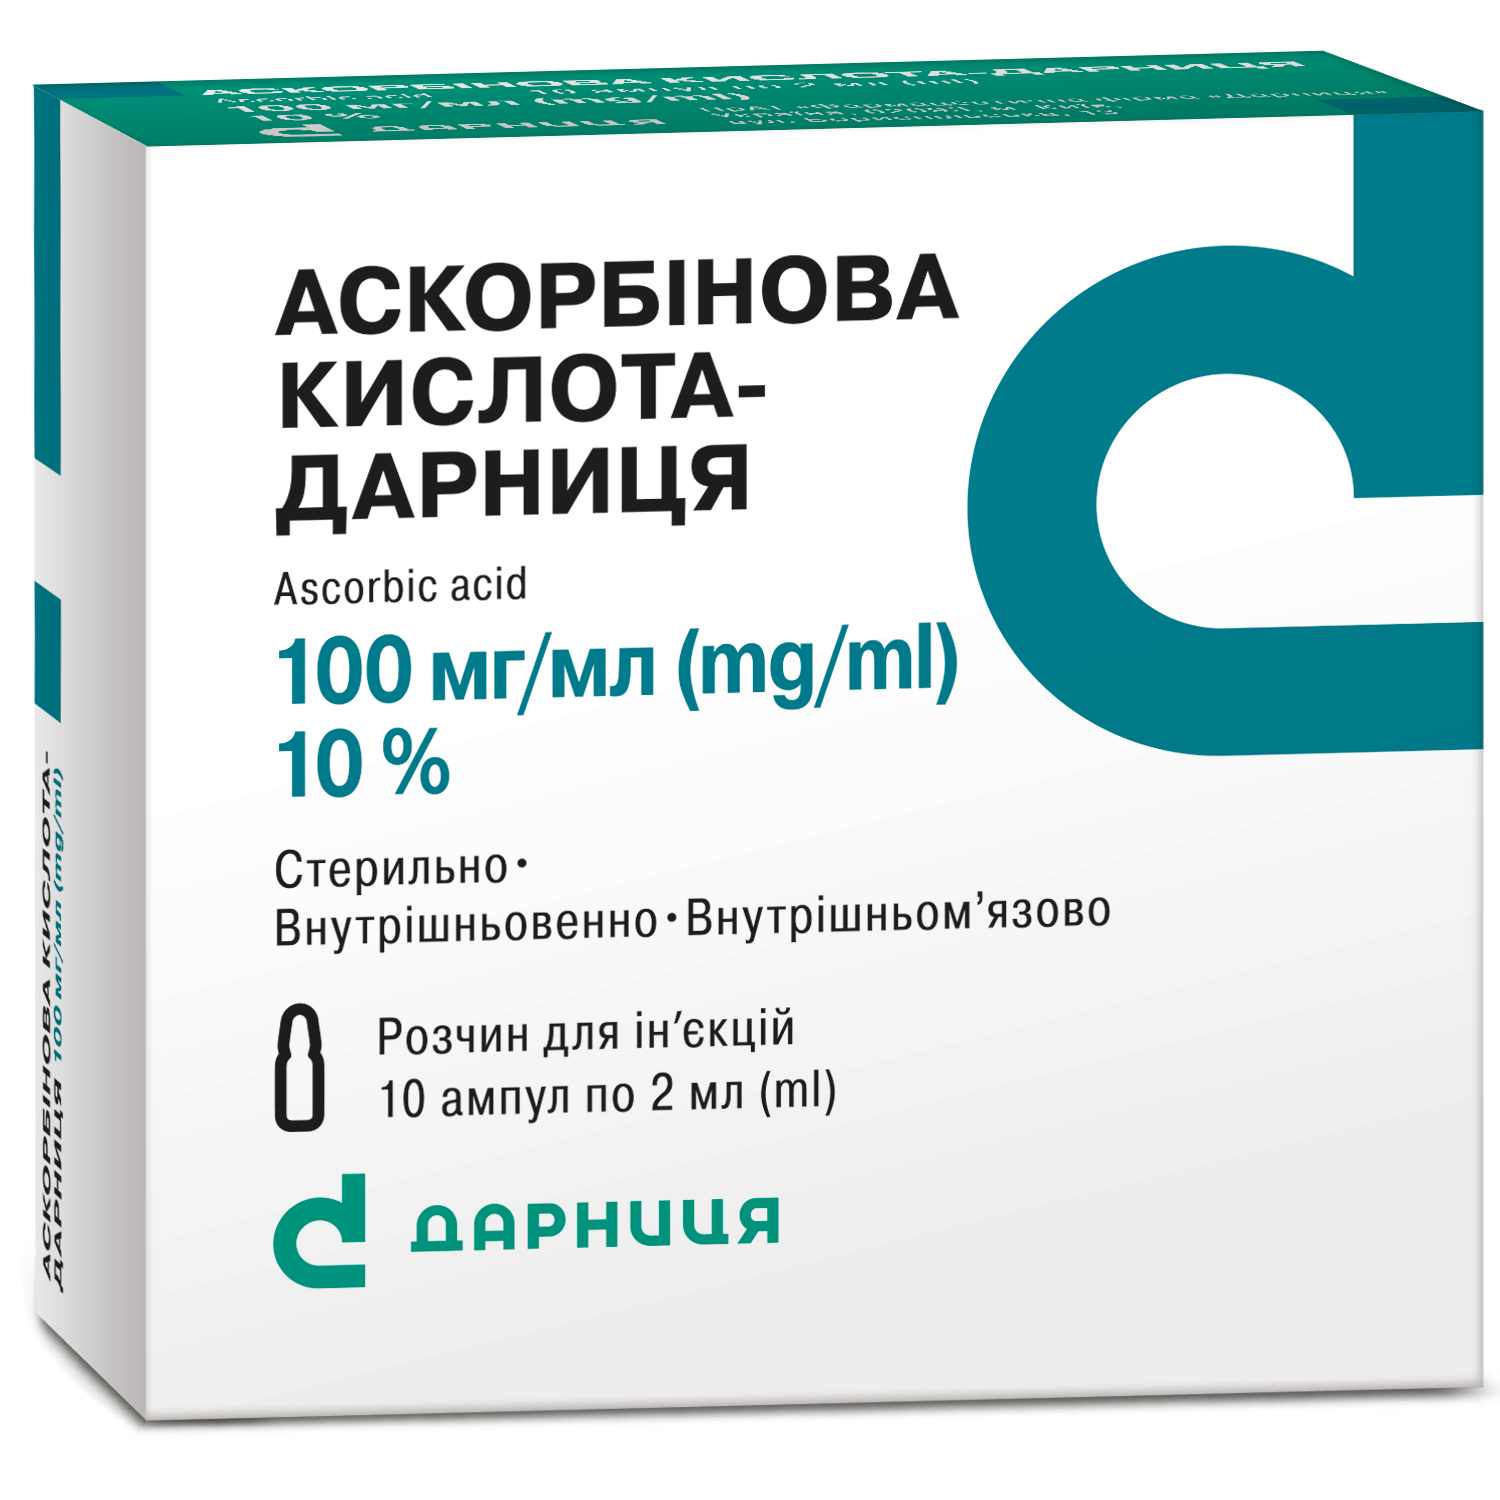 Ascorbic acid-Darnitsa